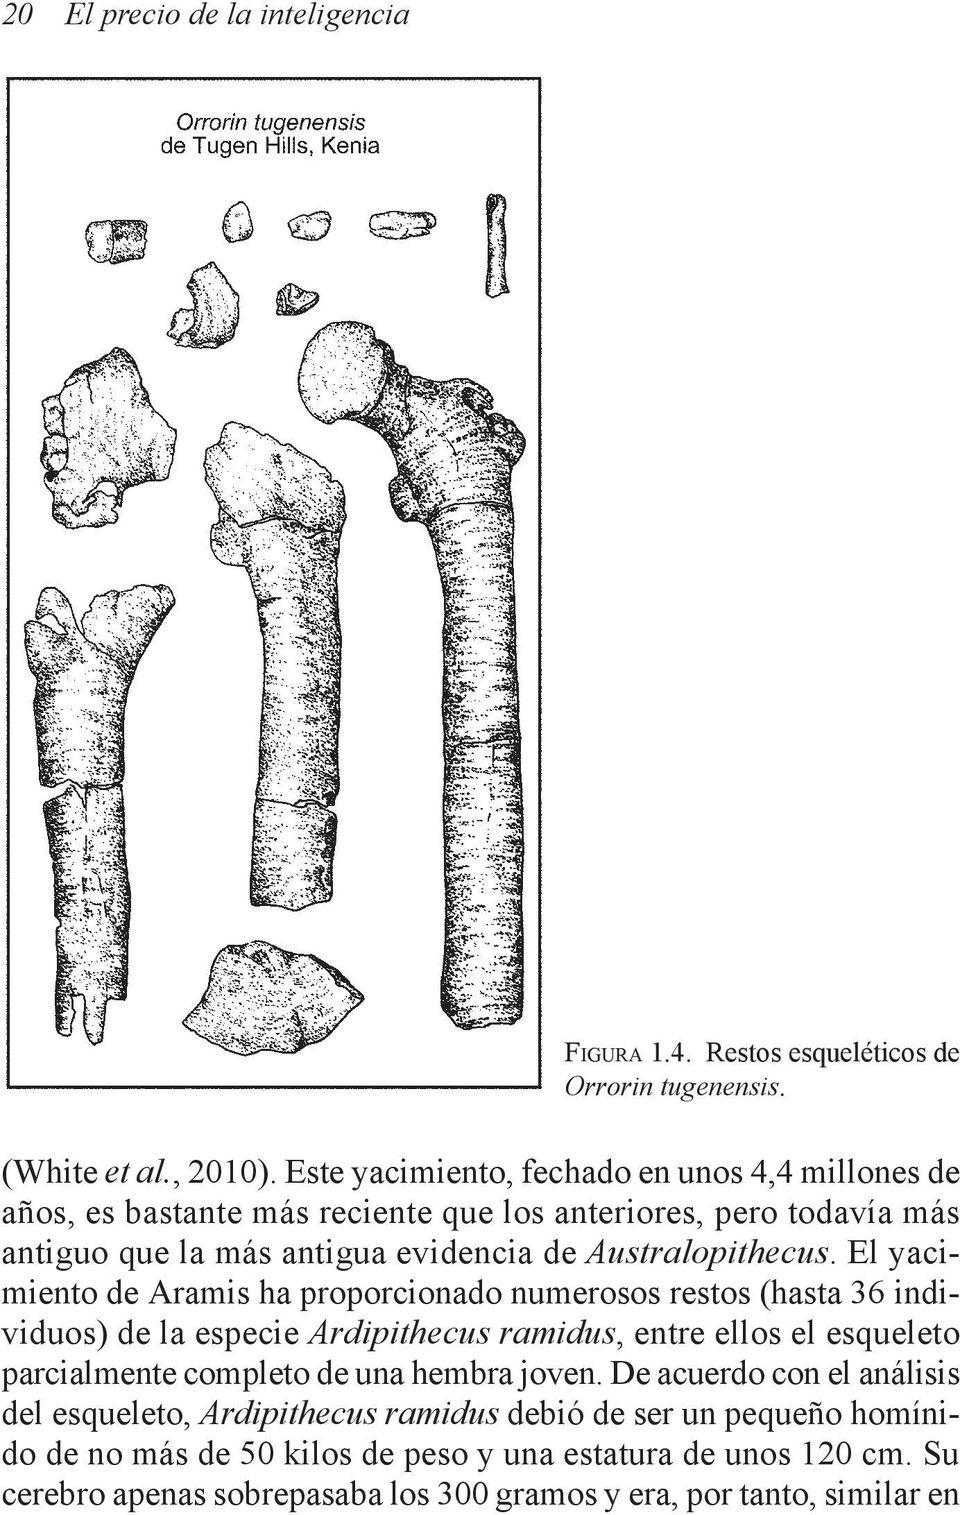 El yacimiento de Aramis ha proporcionado numerosos restos (hasta 36 individuos) de la especie Ardipithecus ramidus, entre ellos el esqueleto parcialmente completo de una